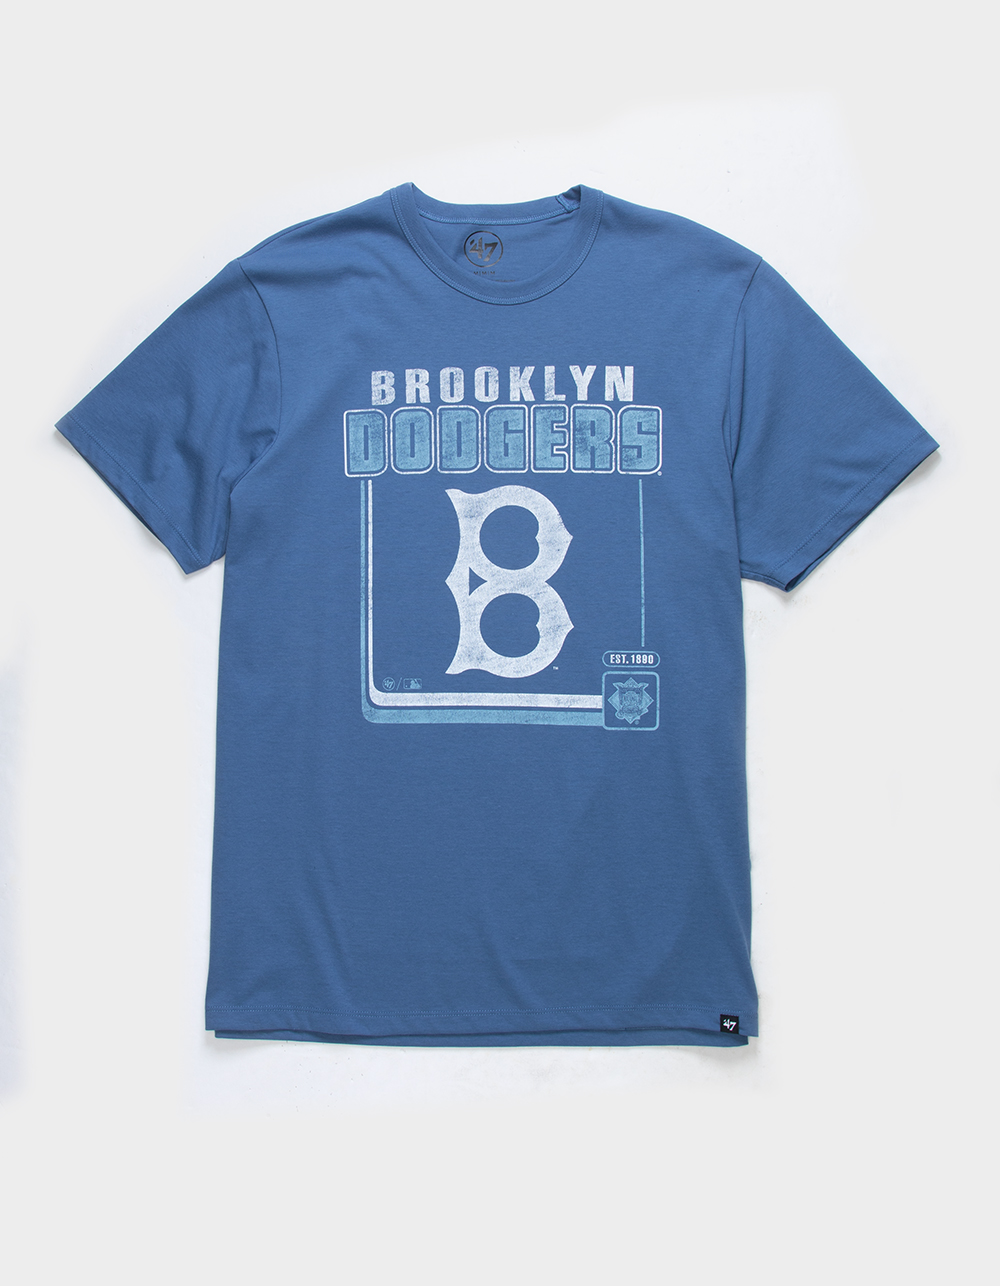 47 Brand Brooklyn Dodgers Boarderline Tee - Blue - Large